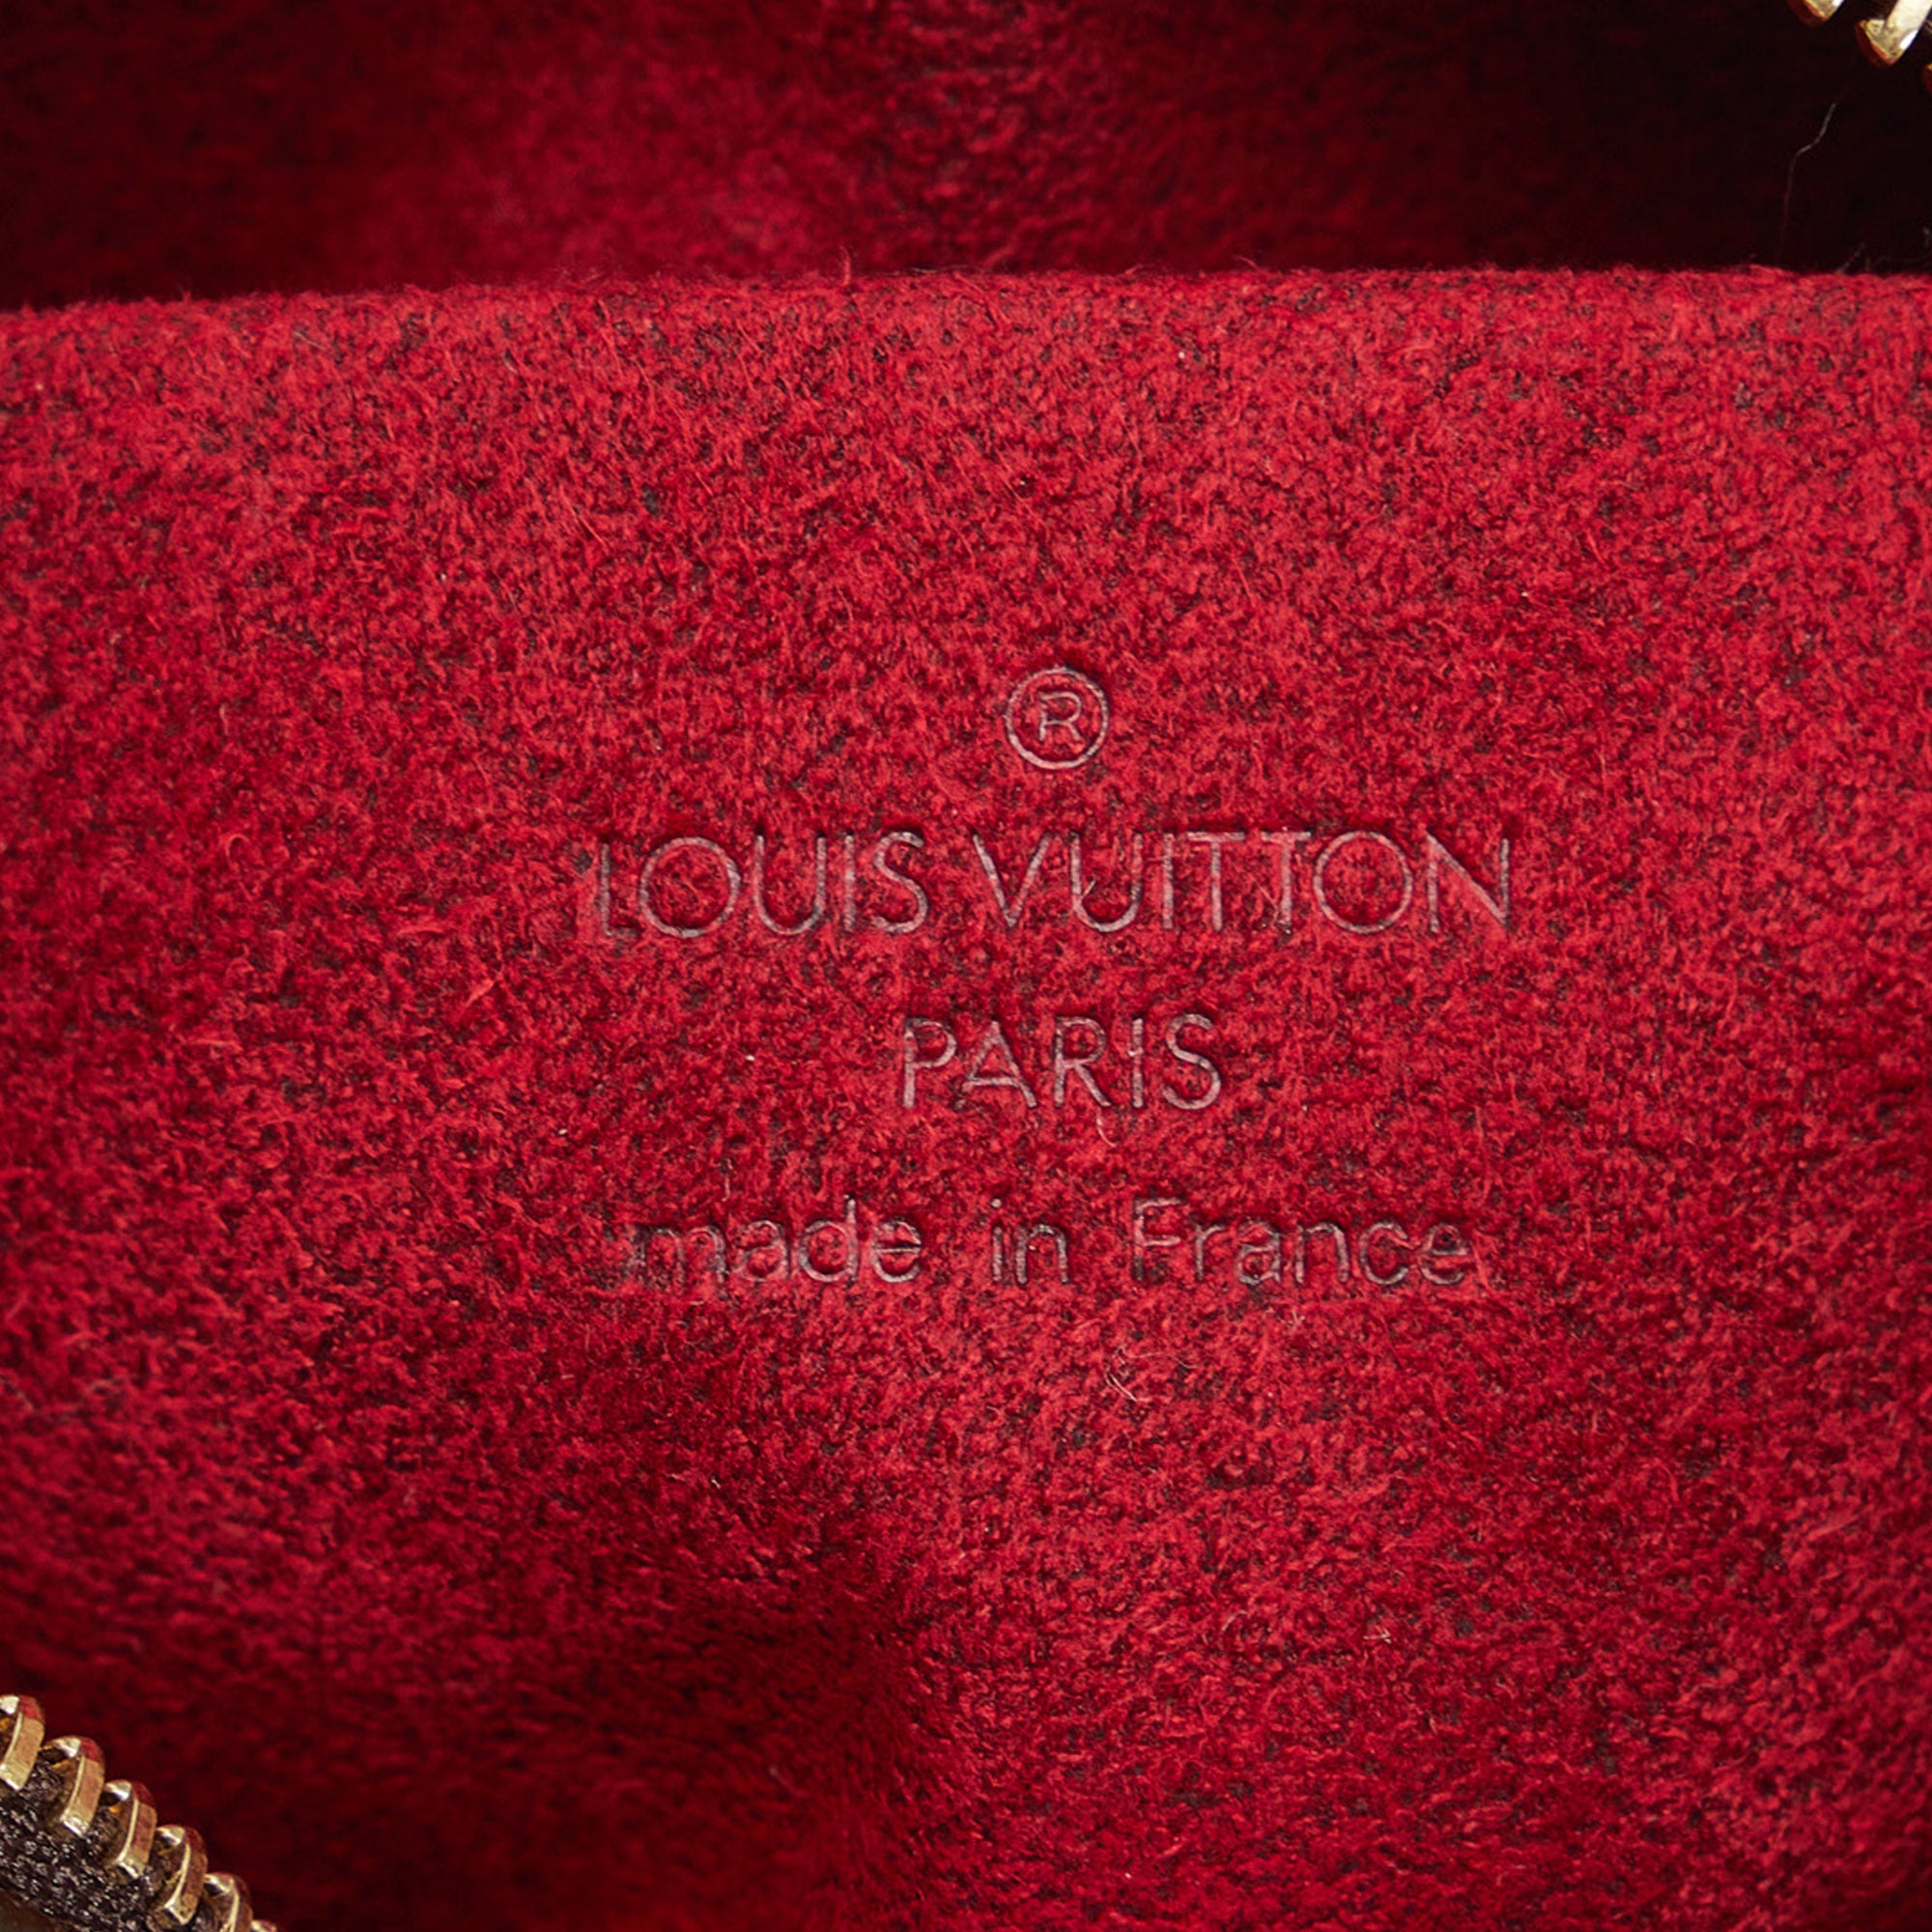 Brown Louis Vuitton Monogram Trousse Wapity Pouch – Designer Revival